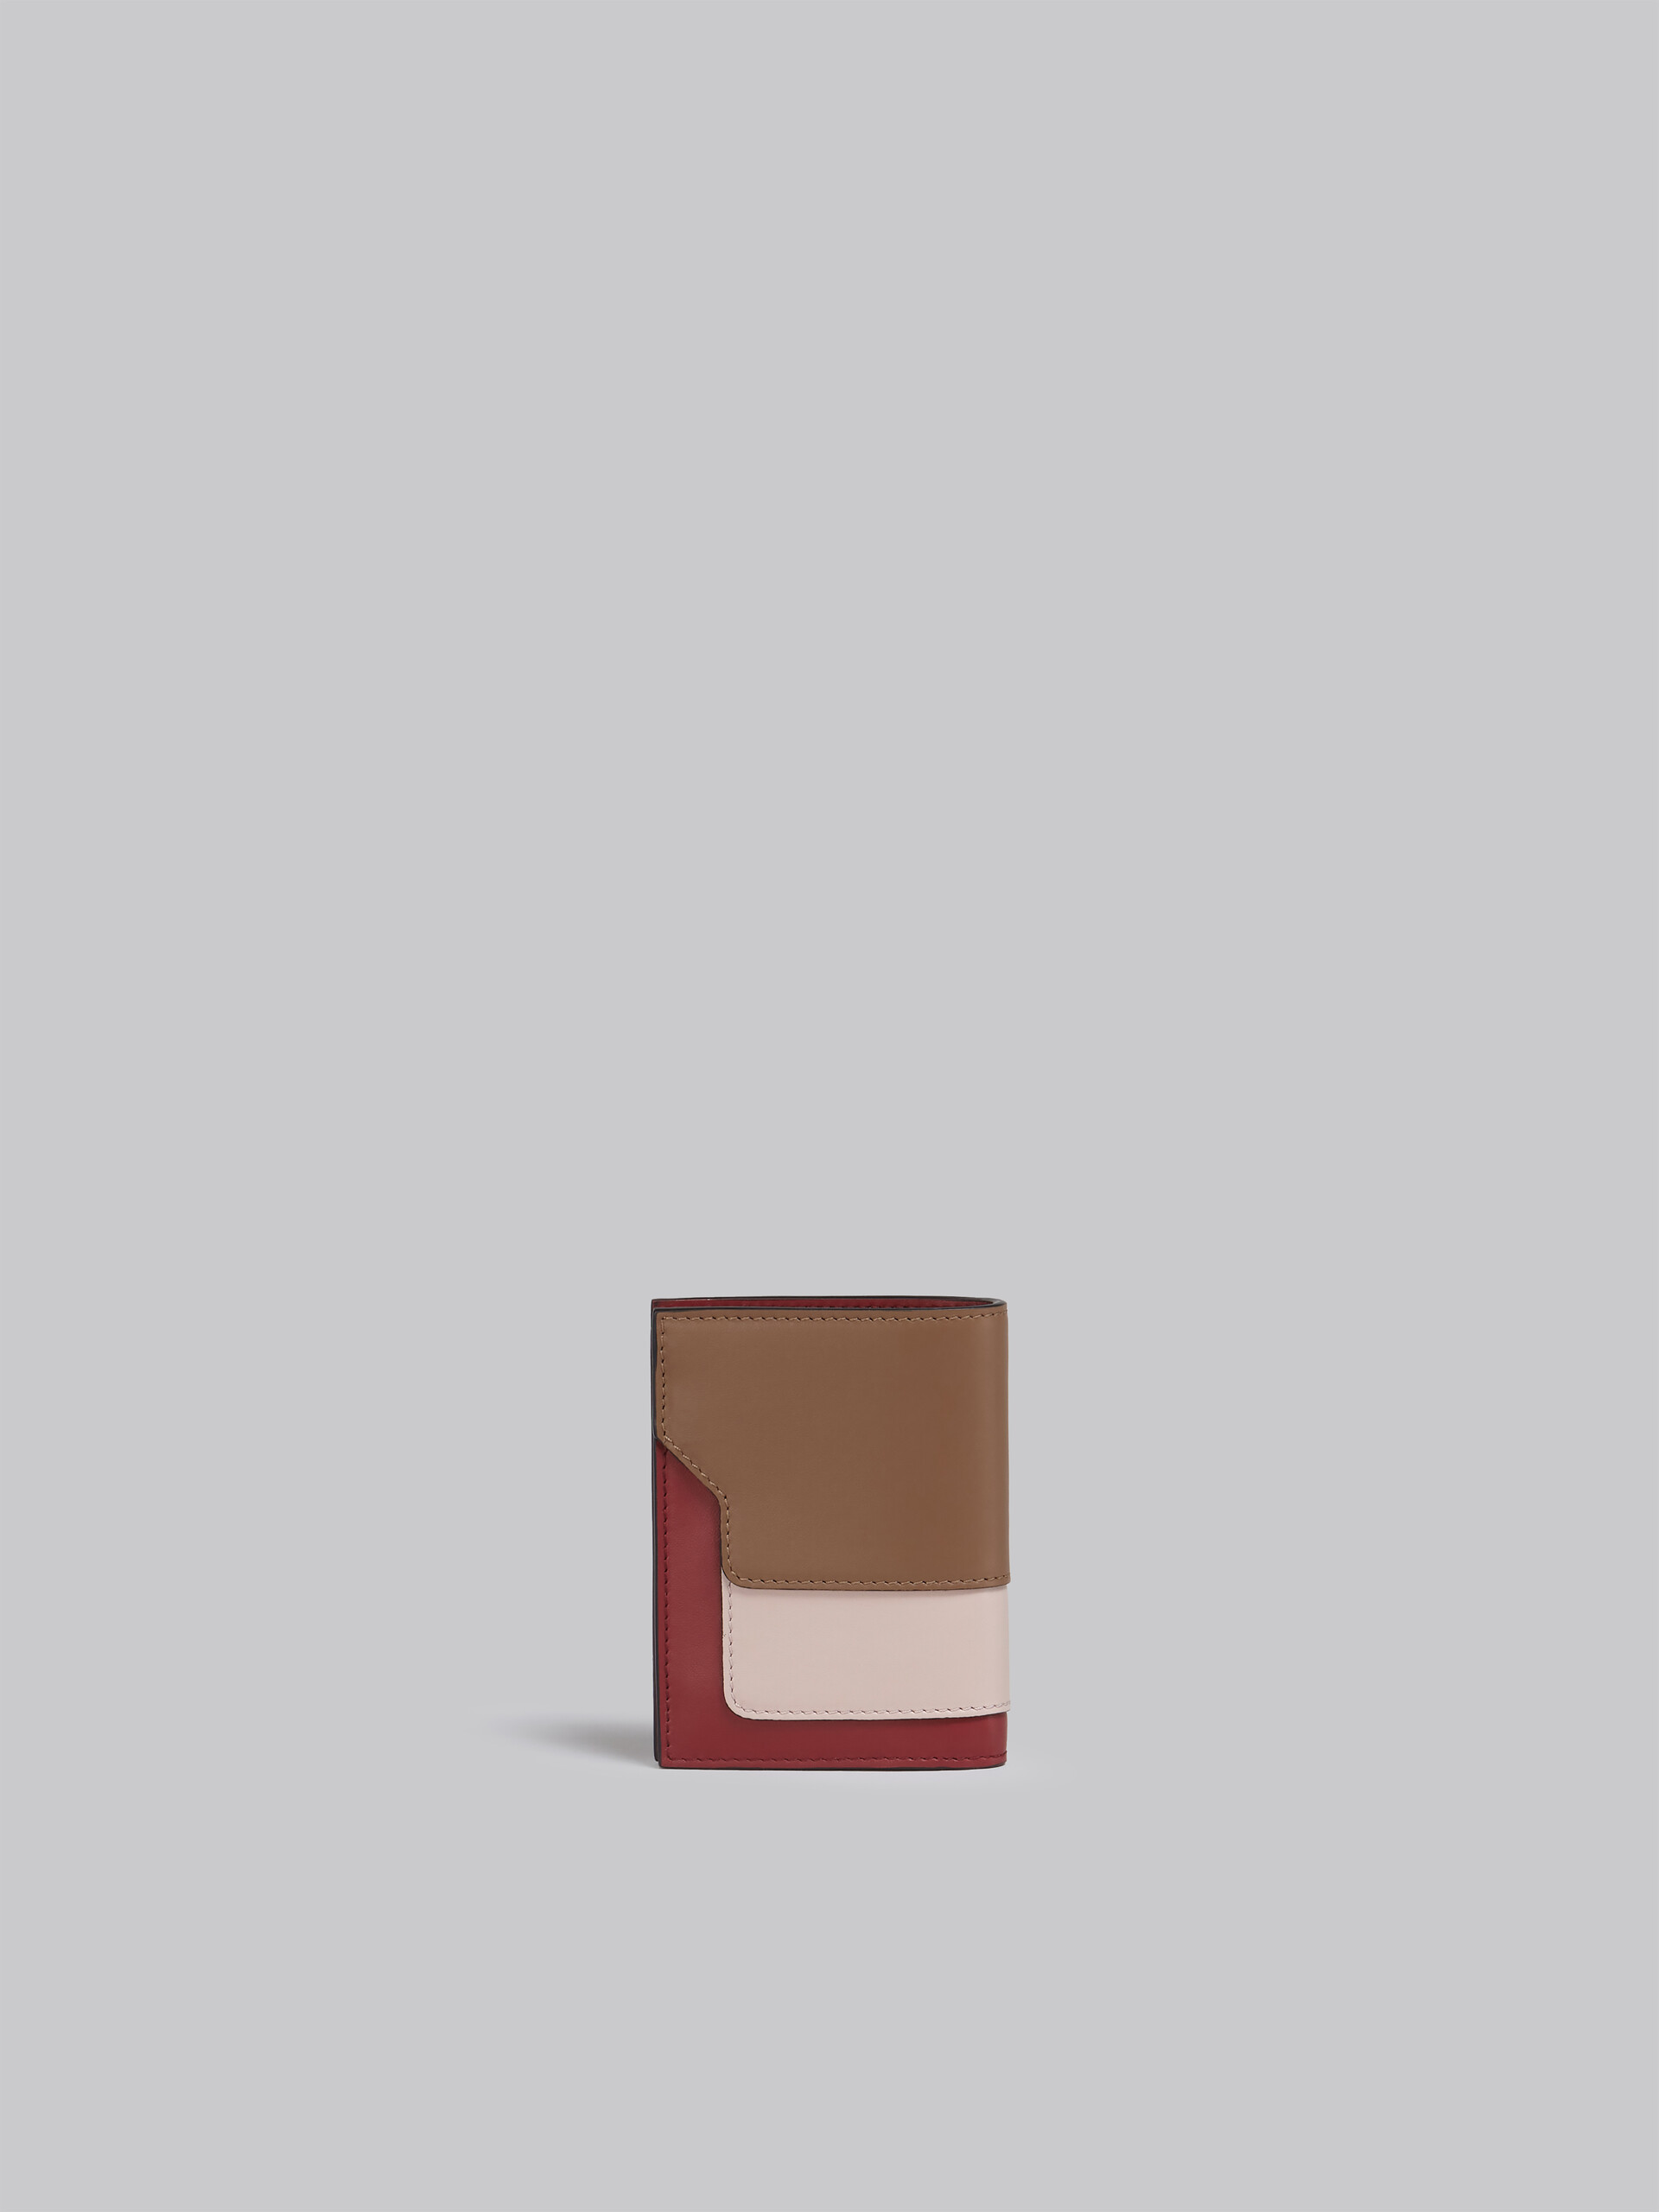 Faltbrieftasche aus braun-pinkem und burgunderrotem Leder - Brieftaschen - Image 3